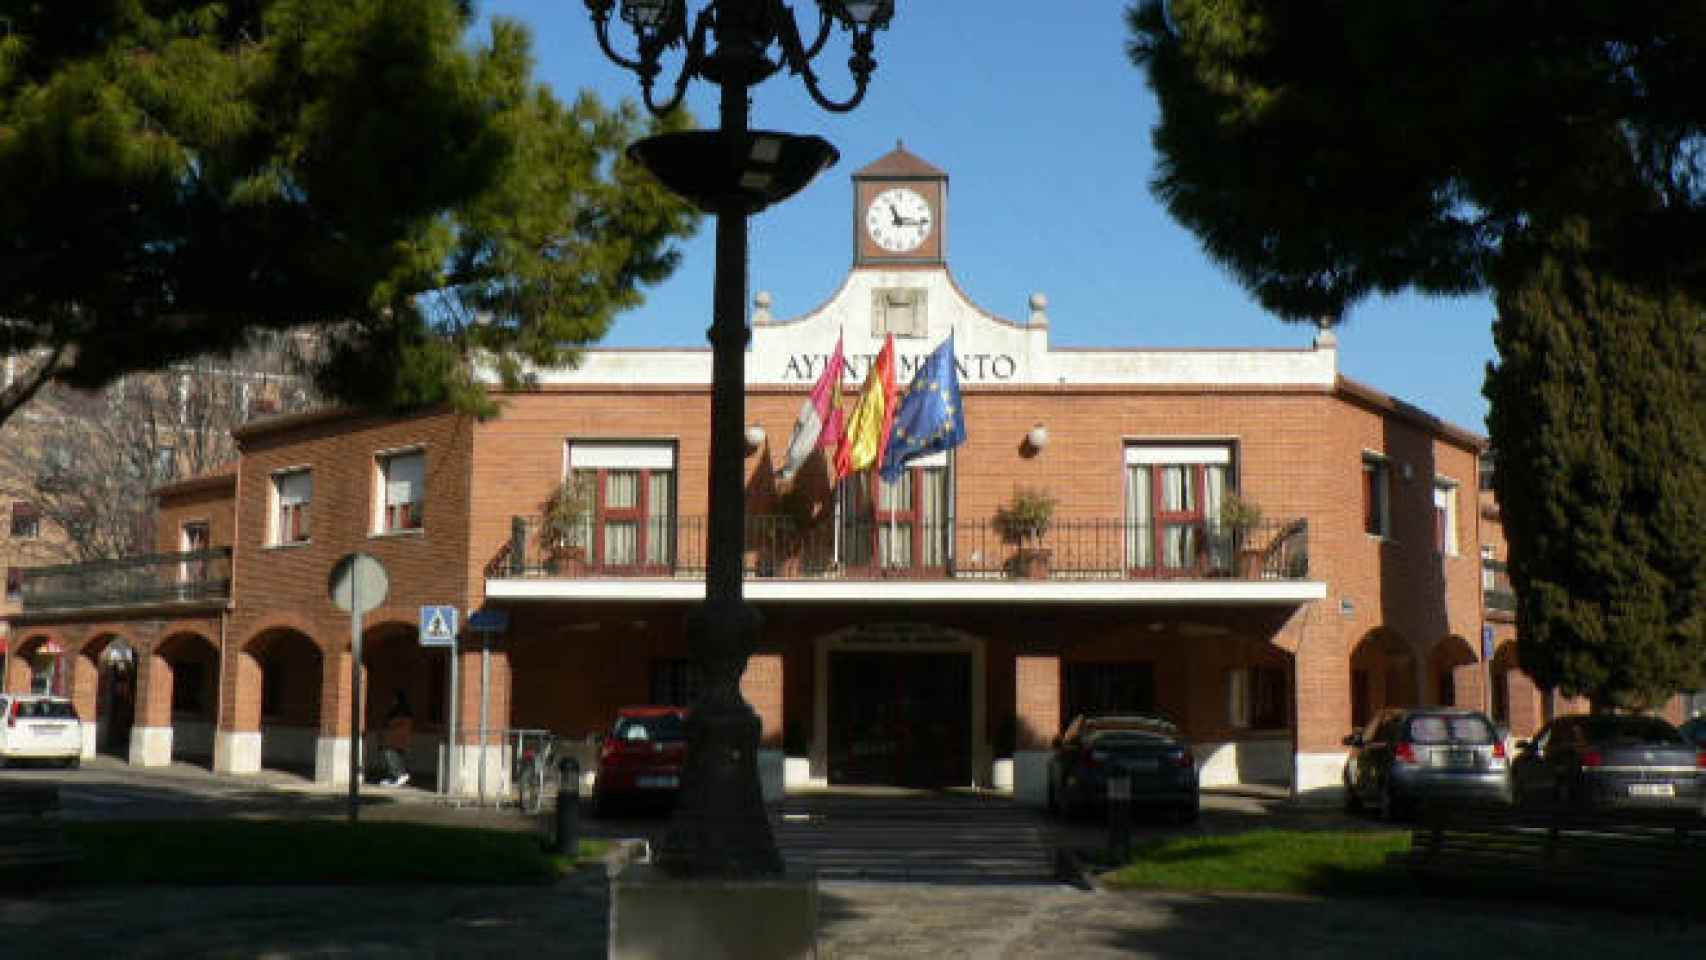 FOTO: Ayuntamiento de Albacete.